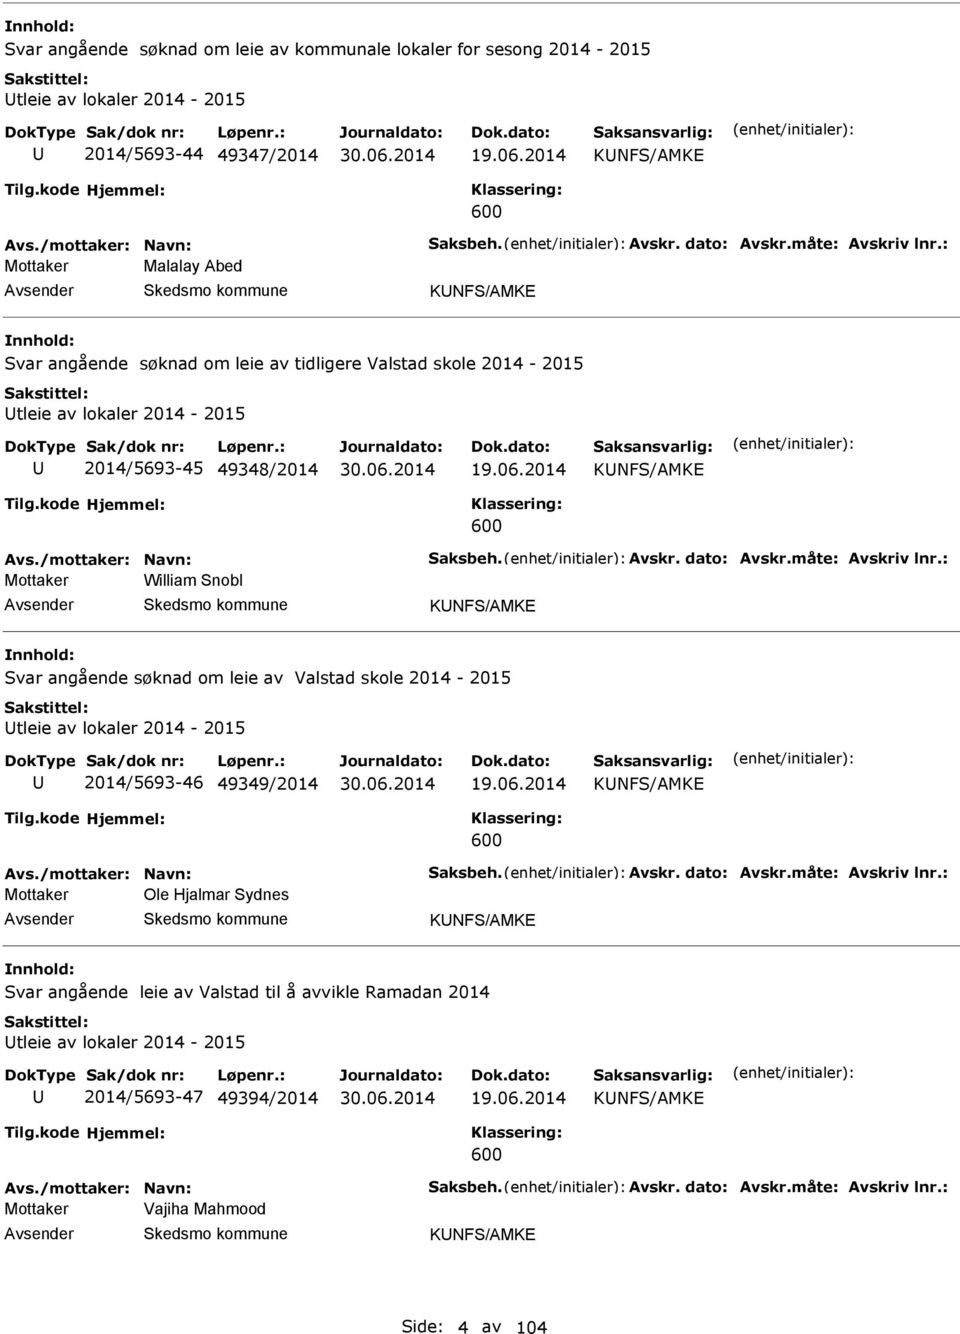 2014 KNFS/MK 600 Mottaker William Snobl KNFS/MK Svar angående søknad om leie av Valstad skole 2014-2015 tleie av lokaler 2014-2015 2014/5693-46 49349/2014 19.06.